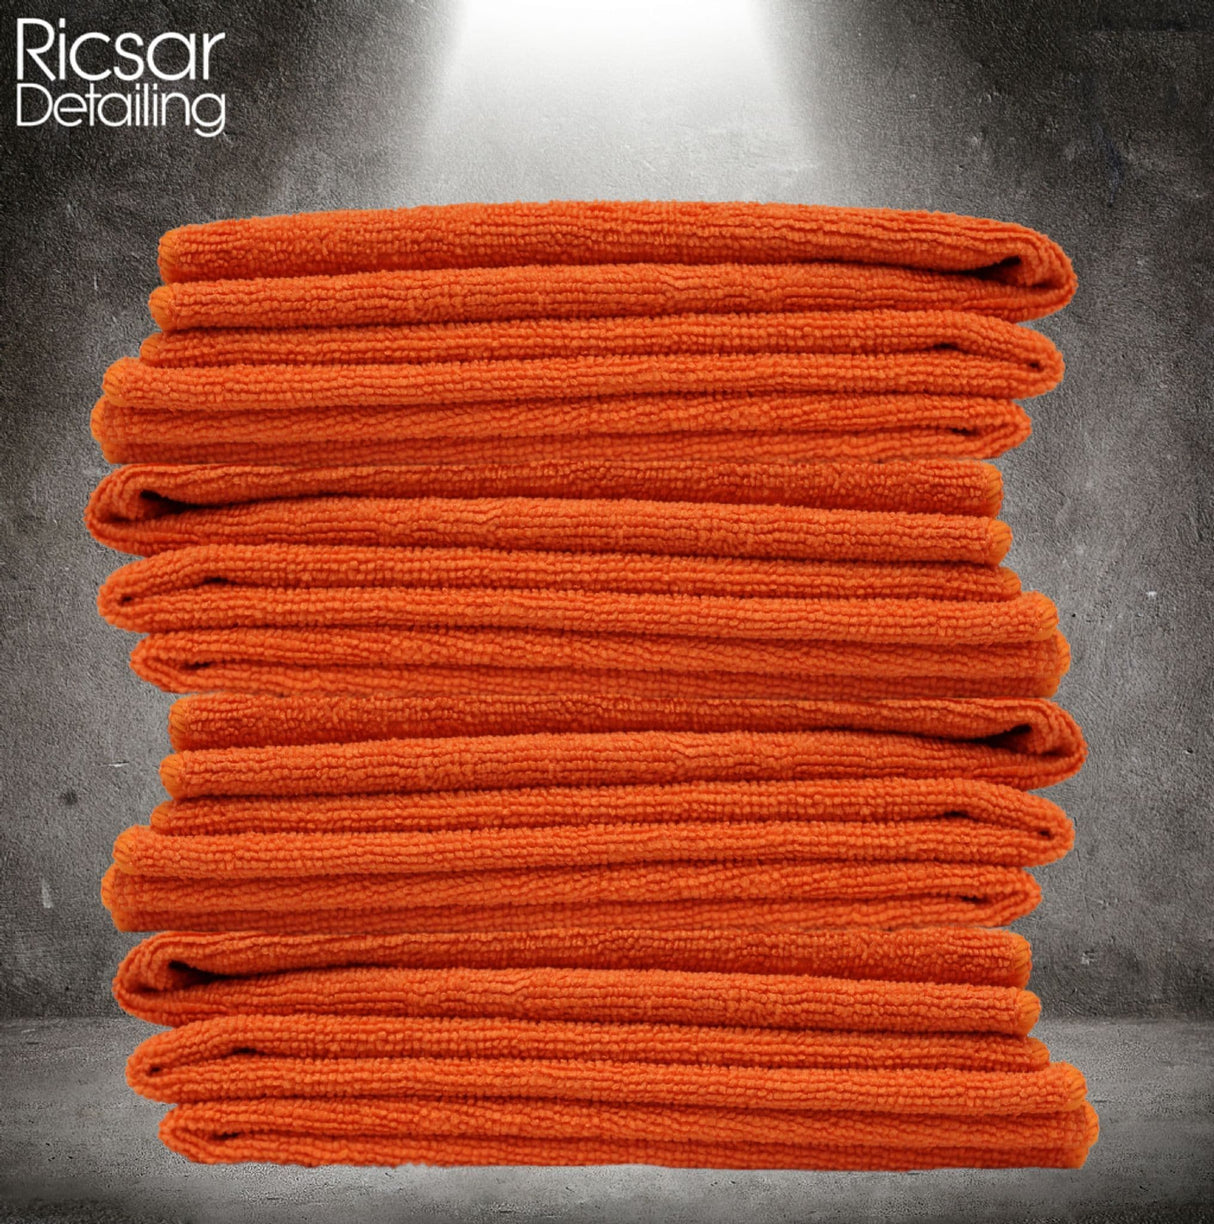 DETAIL GEAR Microfibre Cloths - Orange (Choose Bundle Size)